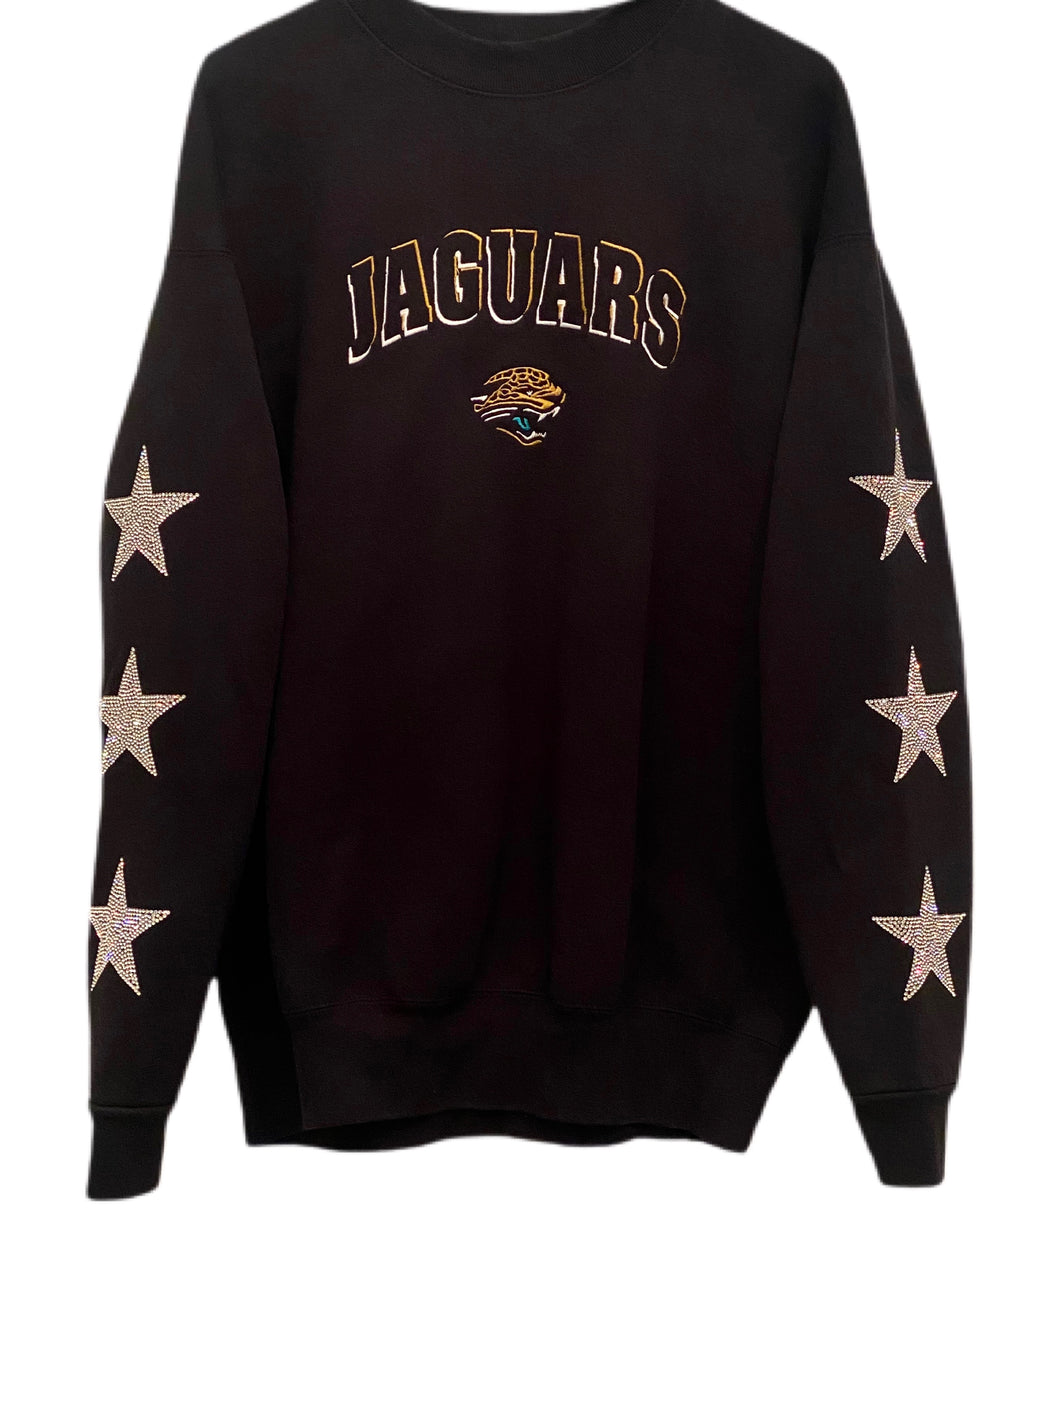 Jacksonville Jaguars, NFL One of a KIND Vintage Sweatshirt with Three Crystal Star Design, Custom Crystal Name